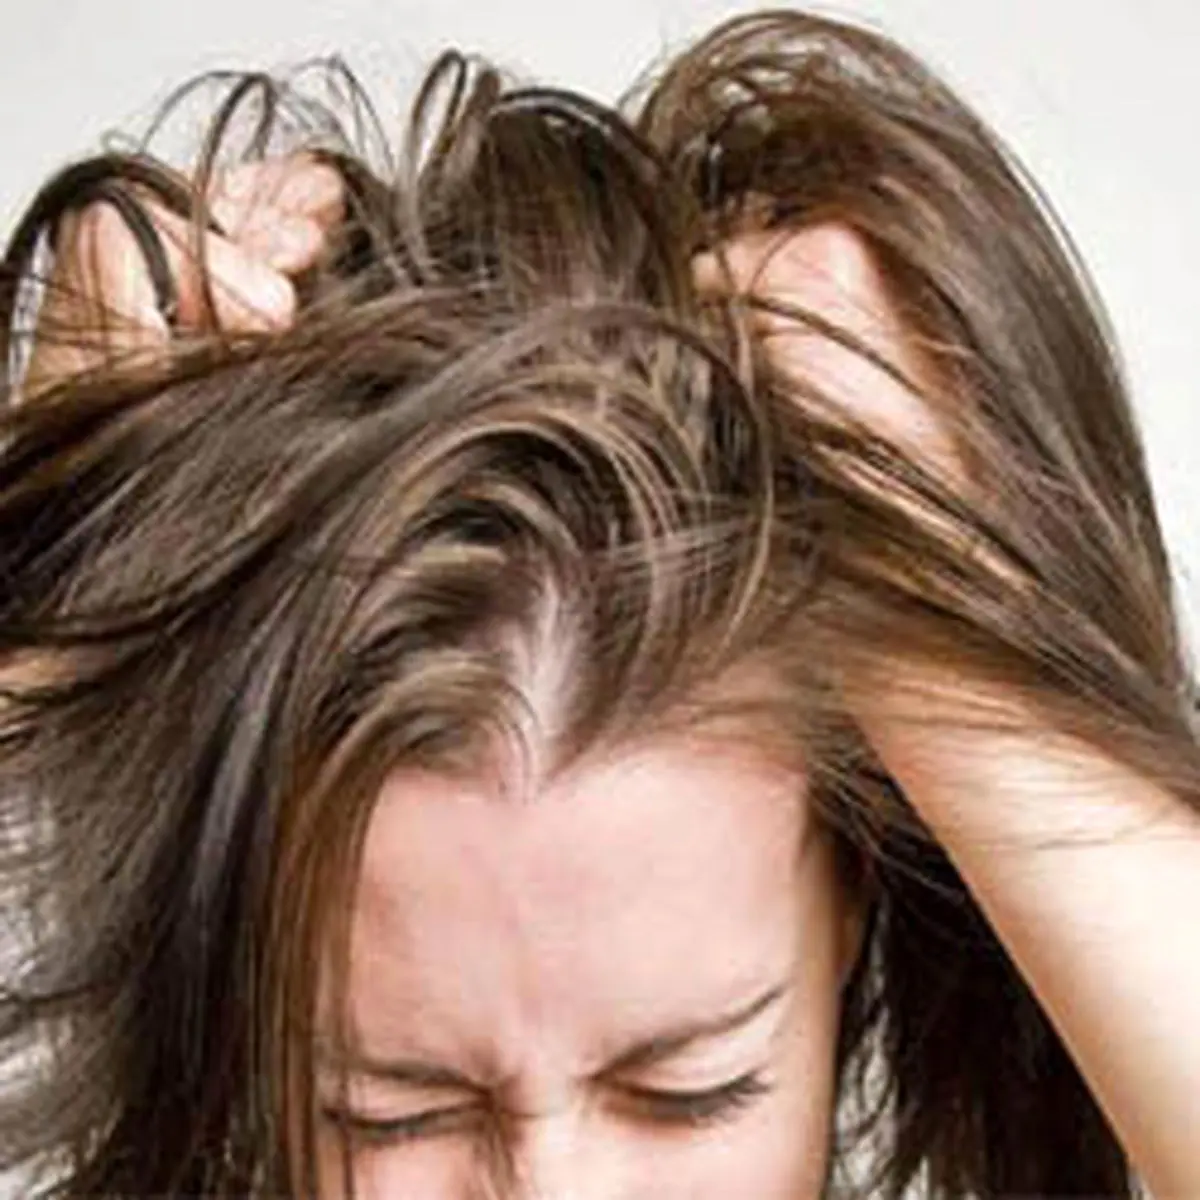 علت درد پوست سر وریشه مو چیست؟ درد پوست سر چگونه درمان می شود؟